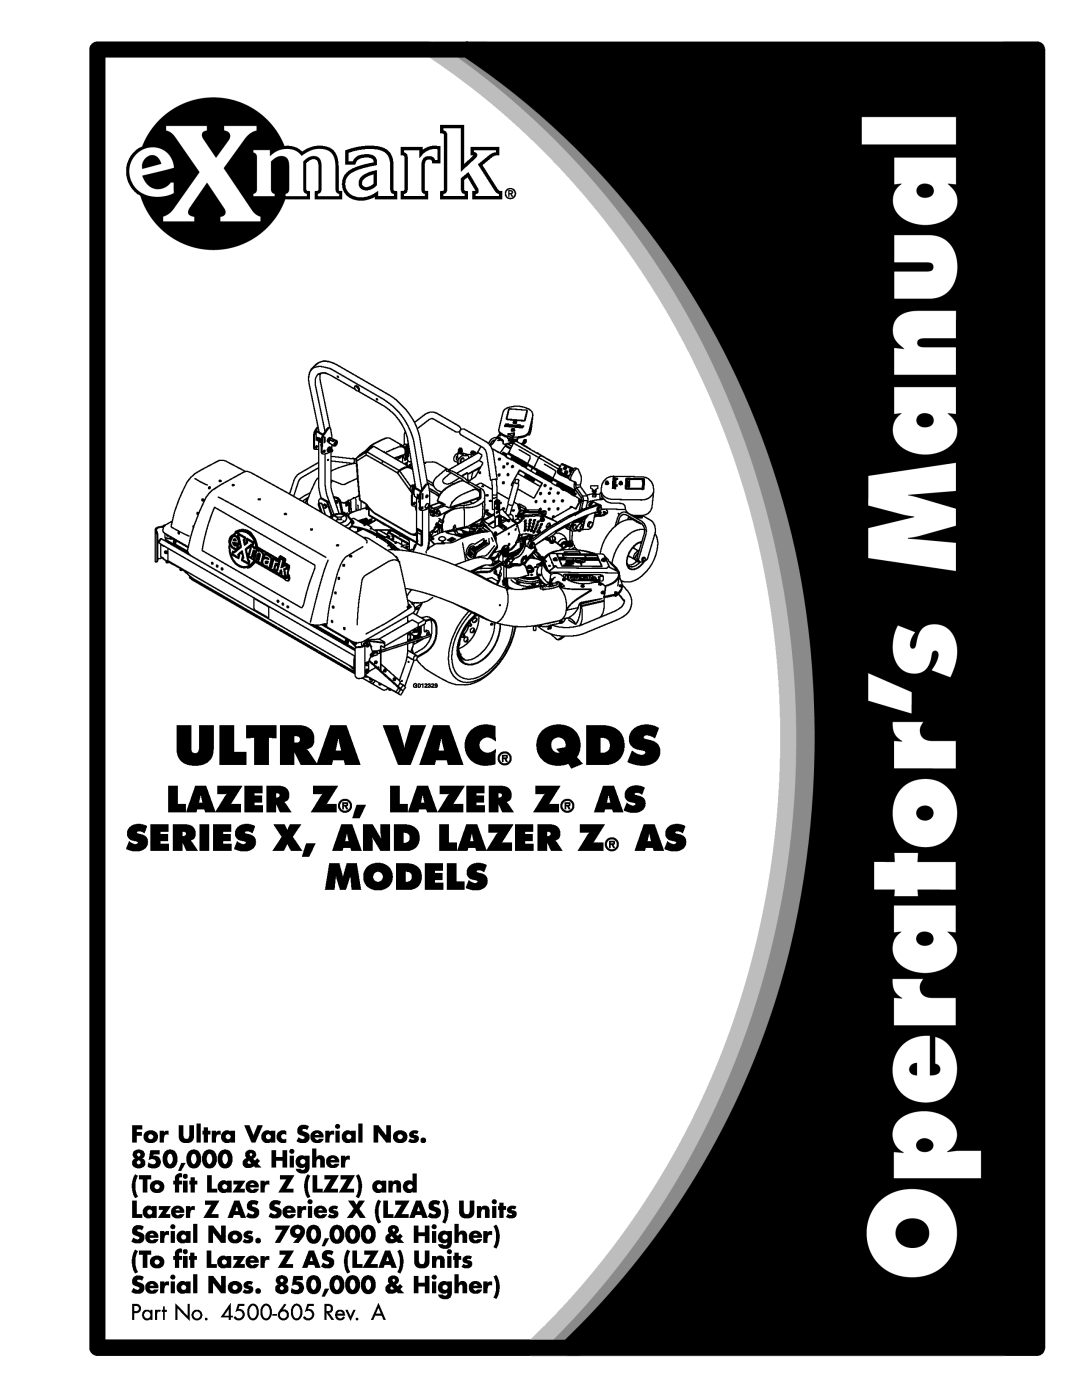 Exmark 850, 000 & higher manual Ultra Vac, Lazer Z, Lazer Z As Series X, And Lazer Z As, Models, To fit Lazer Z LZZ and 